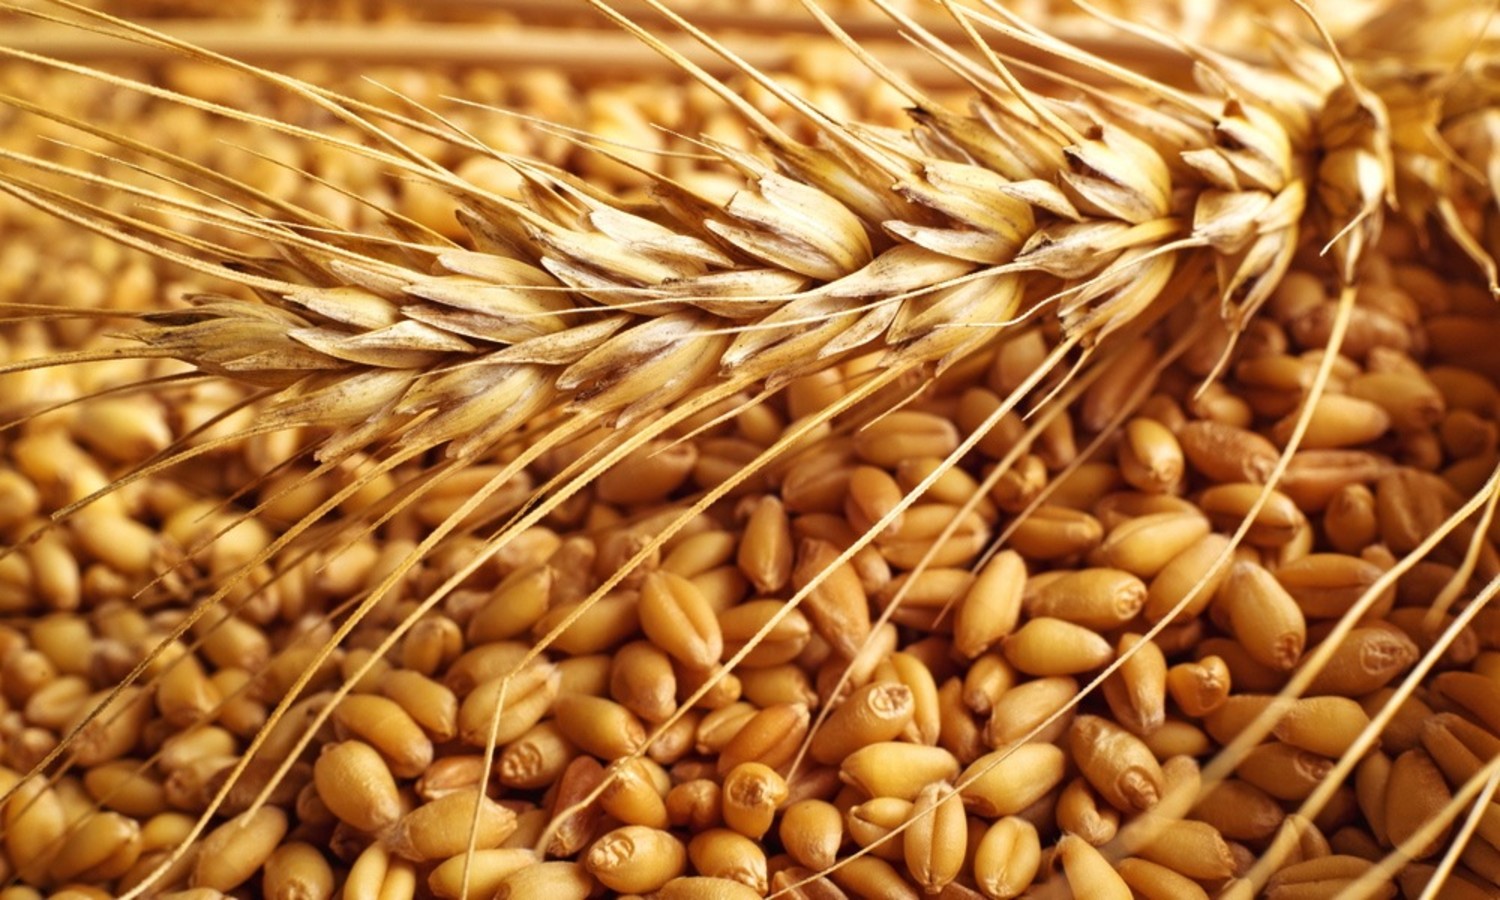 Ottobre: cereali antichi a filiera corta